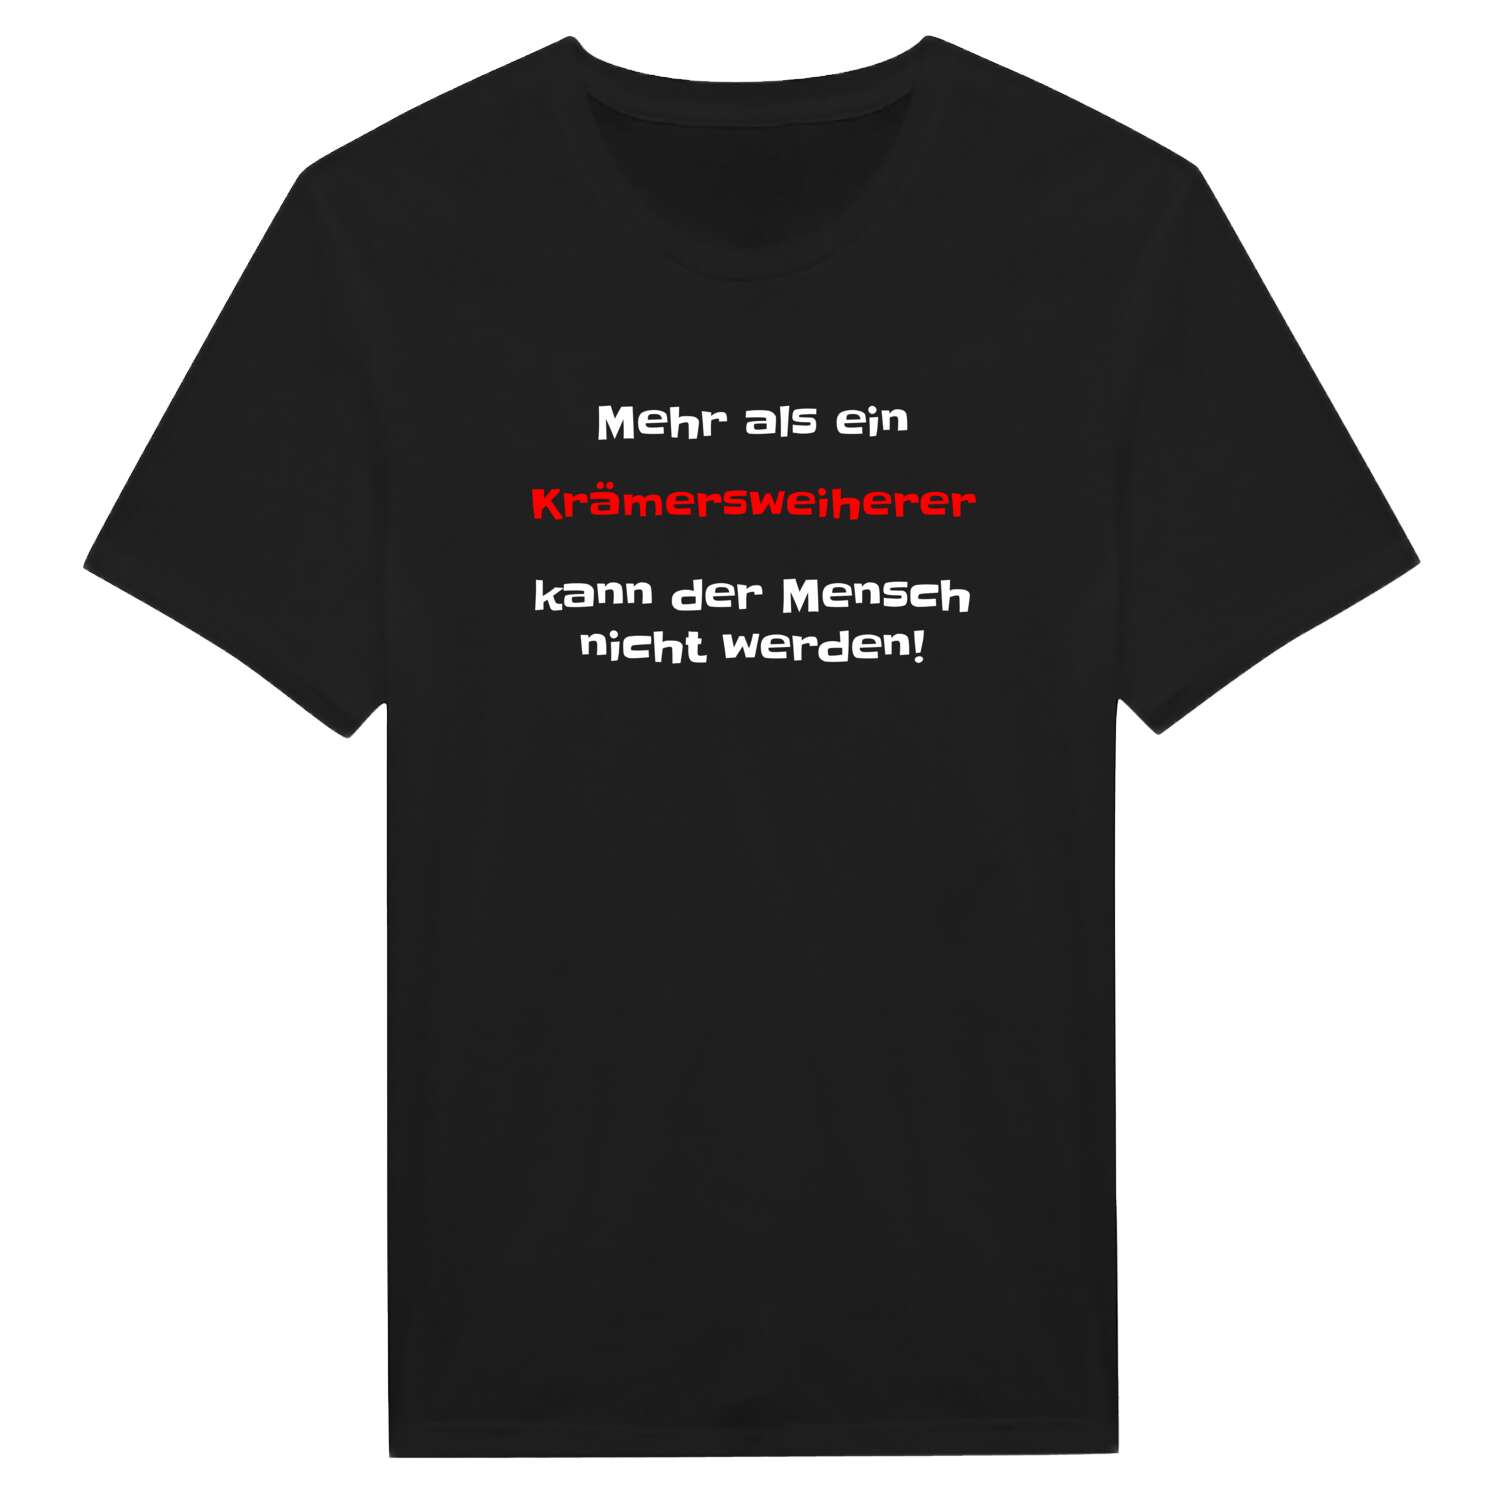 Krämersweiher T-Shirt »Mehr als ein«